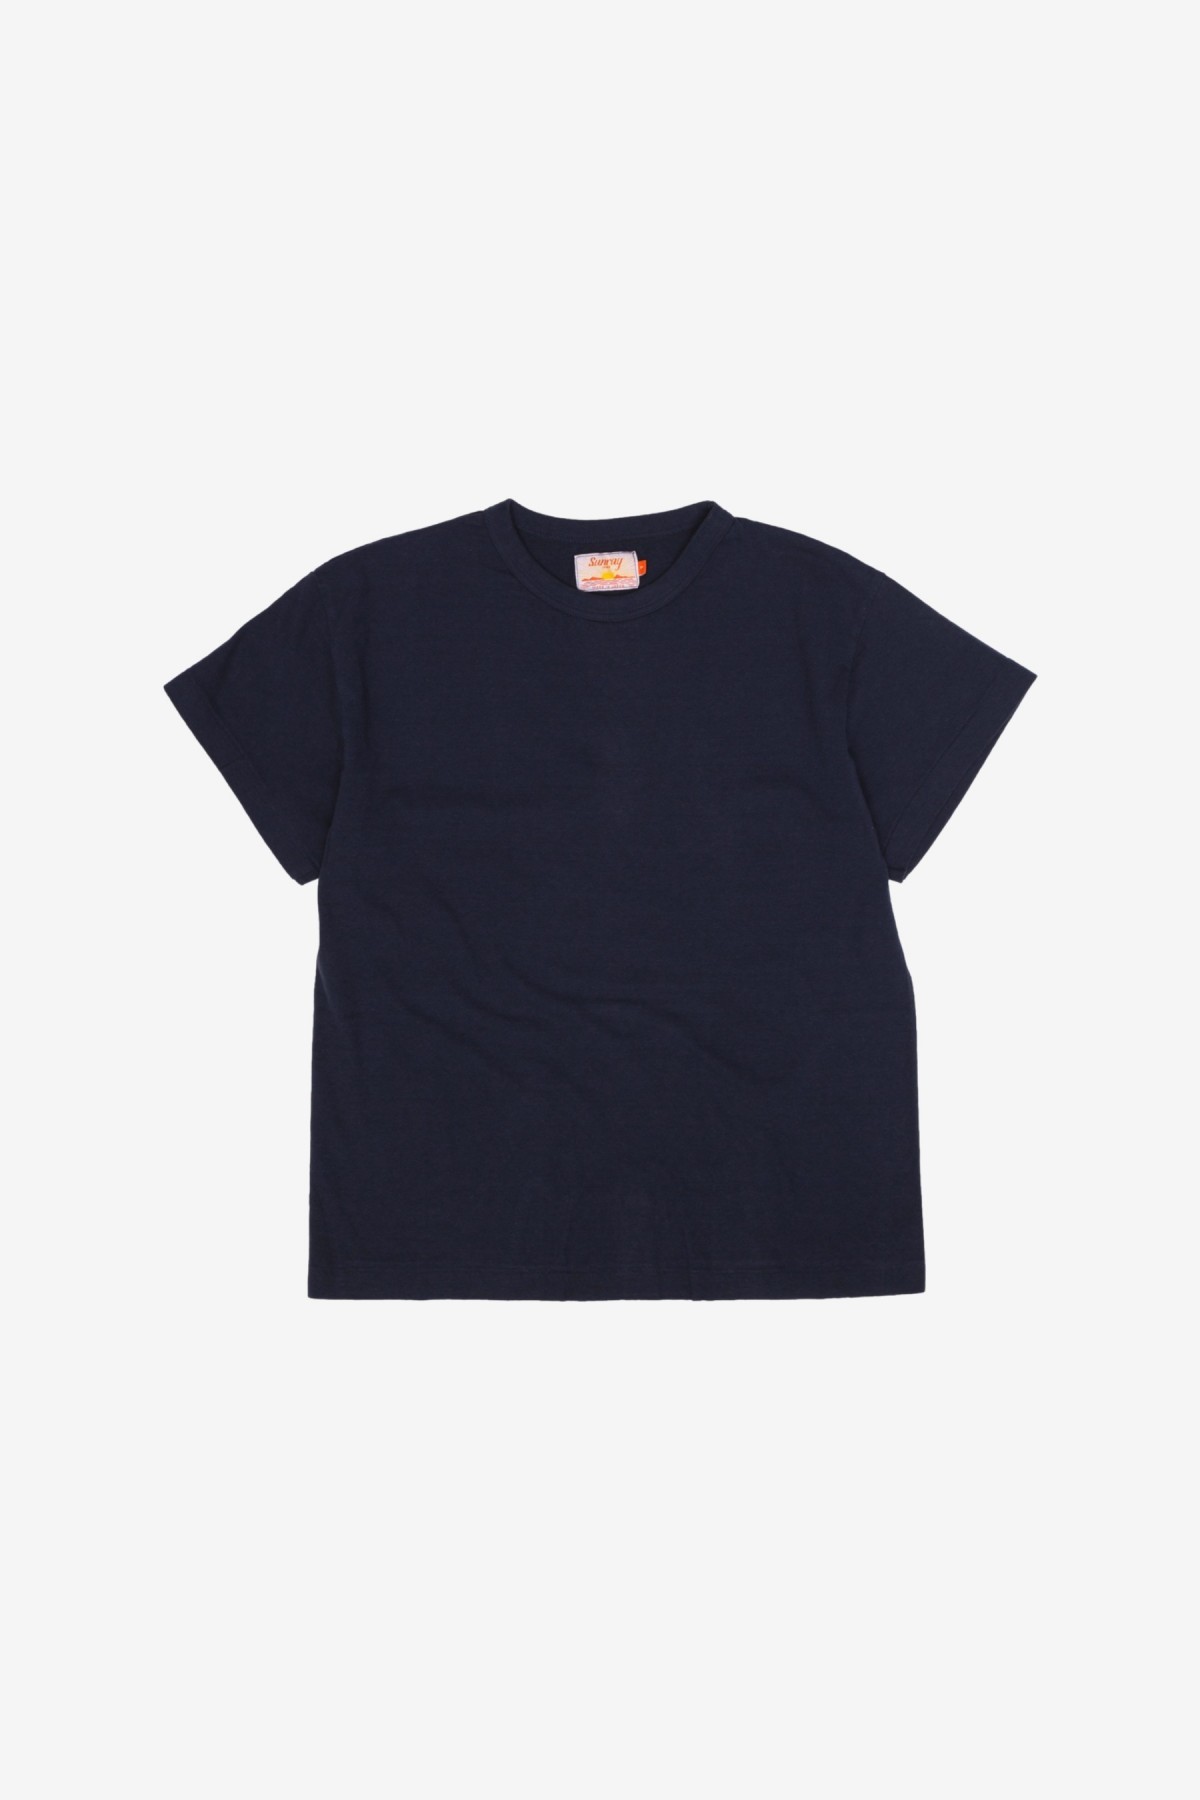 Sunray Sportswear Na'Maka'Oh Short Sleeve T-Shirt in Dark Navy